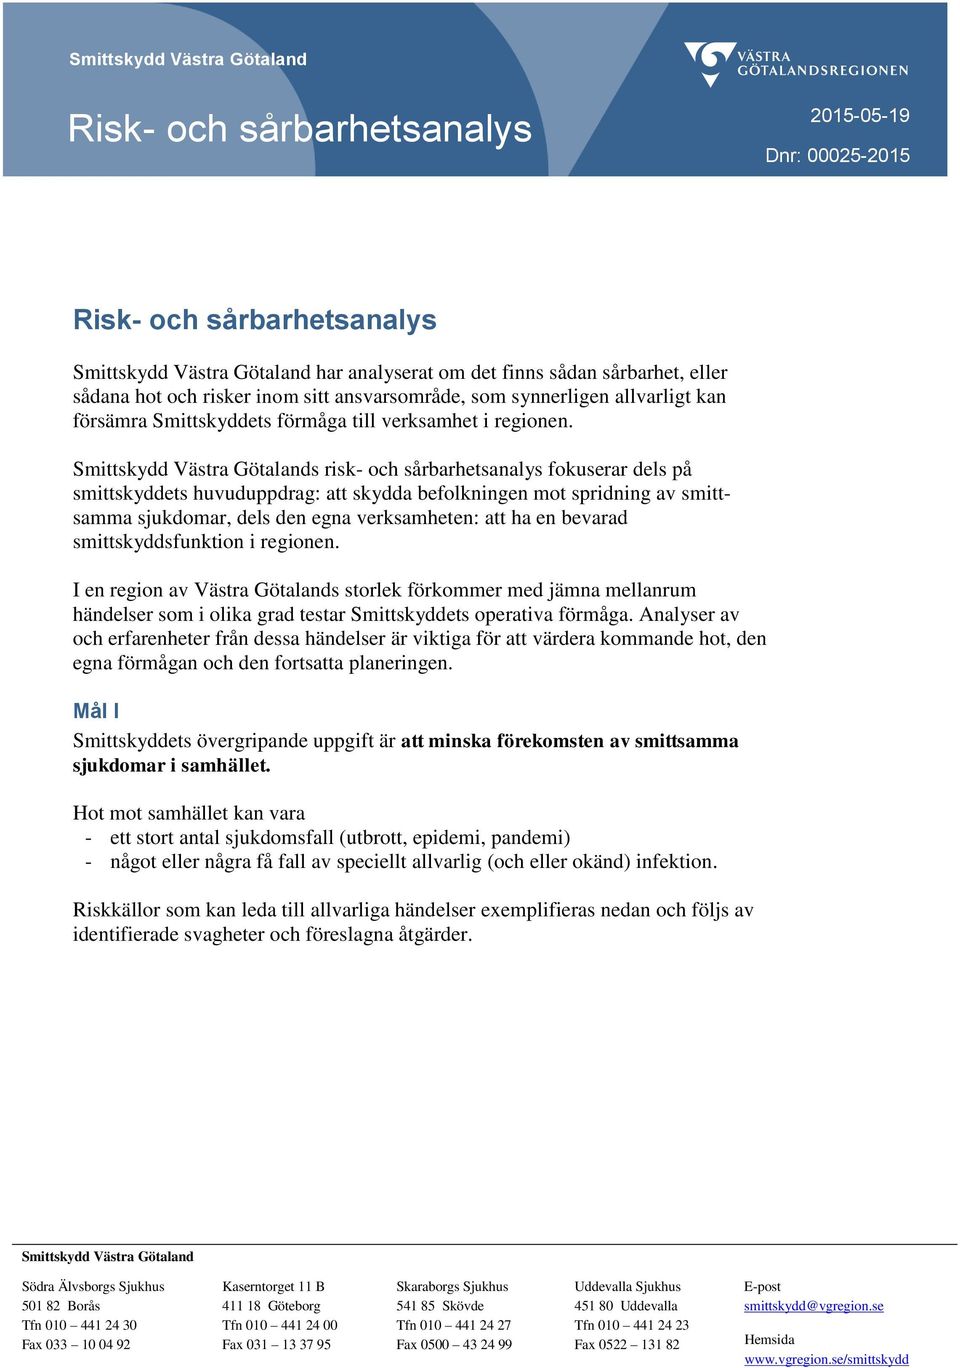 Smittskydd Västra Götalands risk- och sårbarhetsanalys fokuserar dels på smittskyddets huvuduppdrag: att skydda befolkningen mot spridning av smittsamma sjukdomar, dels den egna verksamheten: att ha